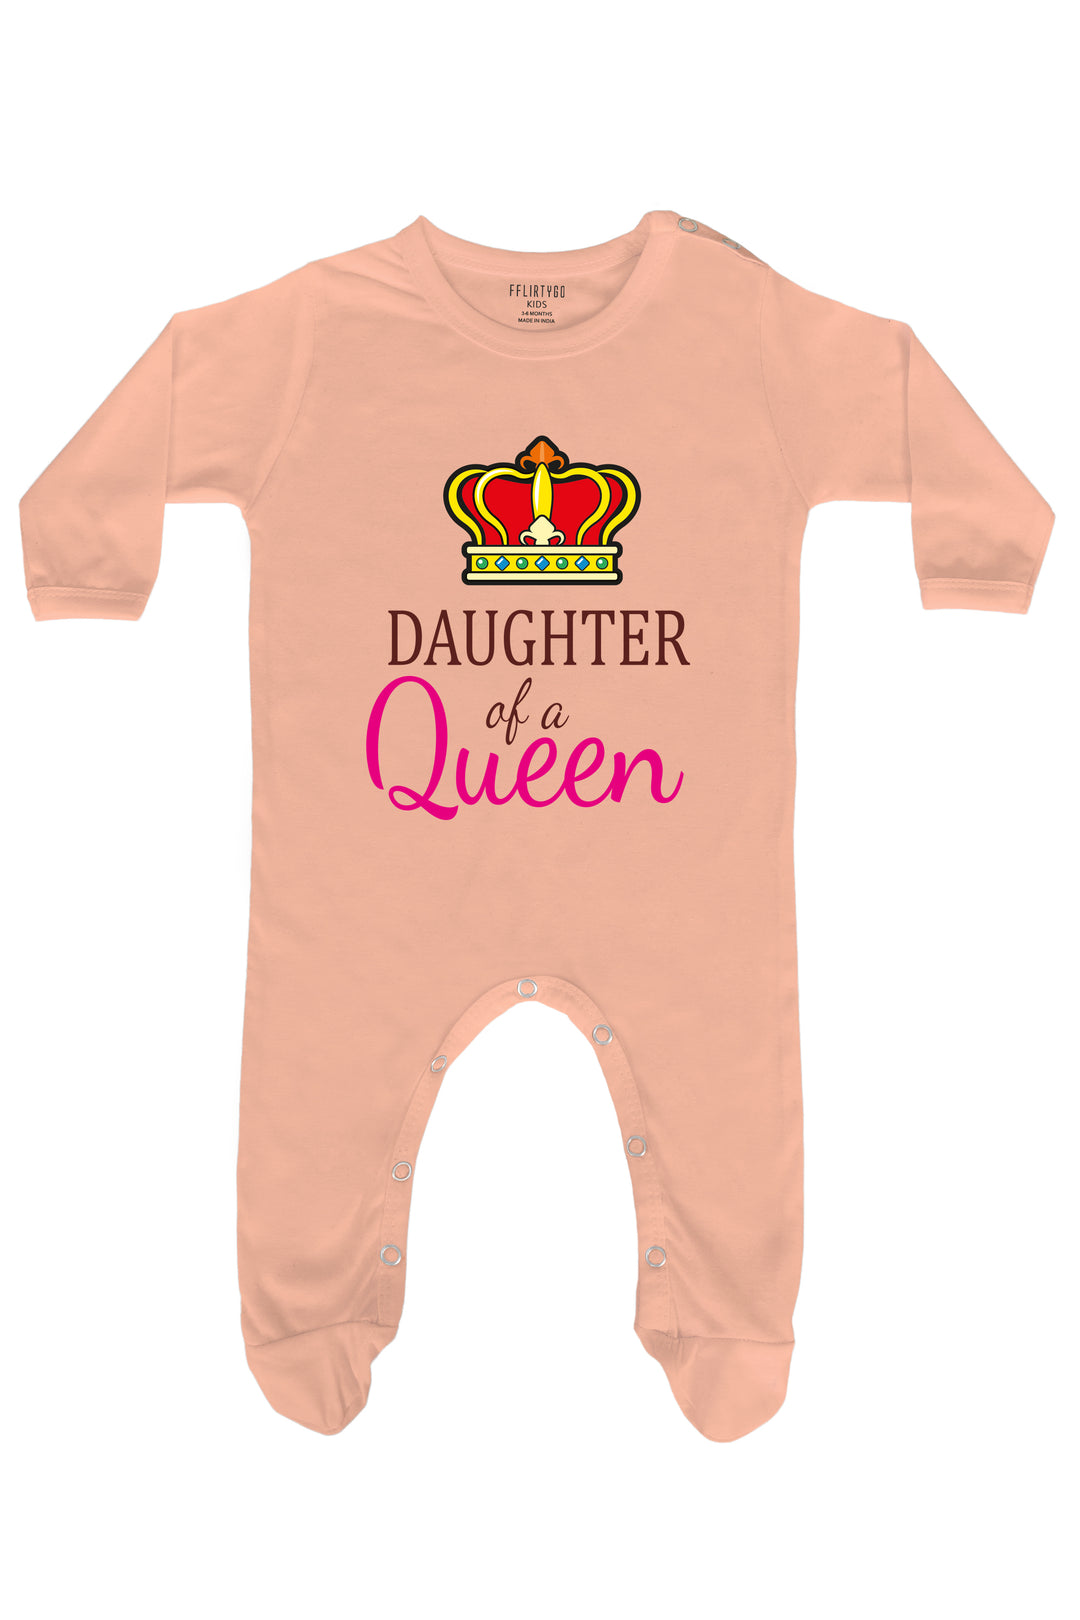 Daughter Of Queen Baby Romper | Onesies